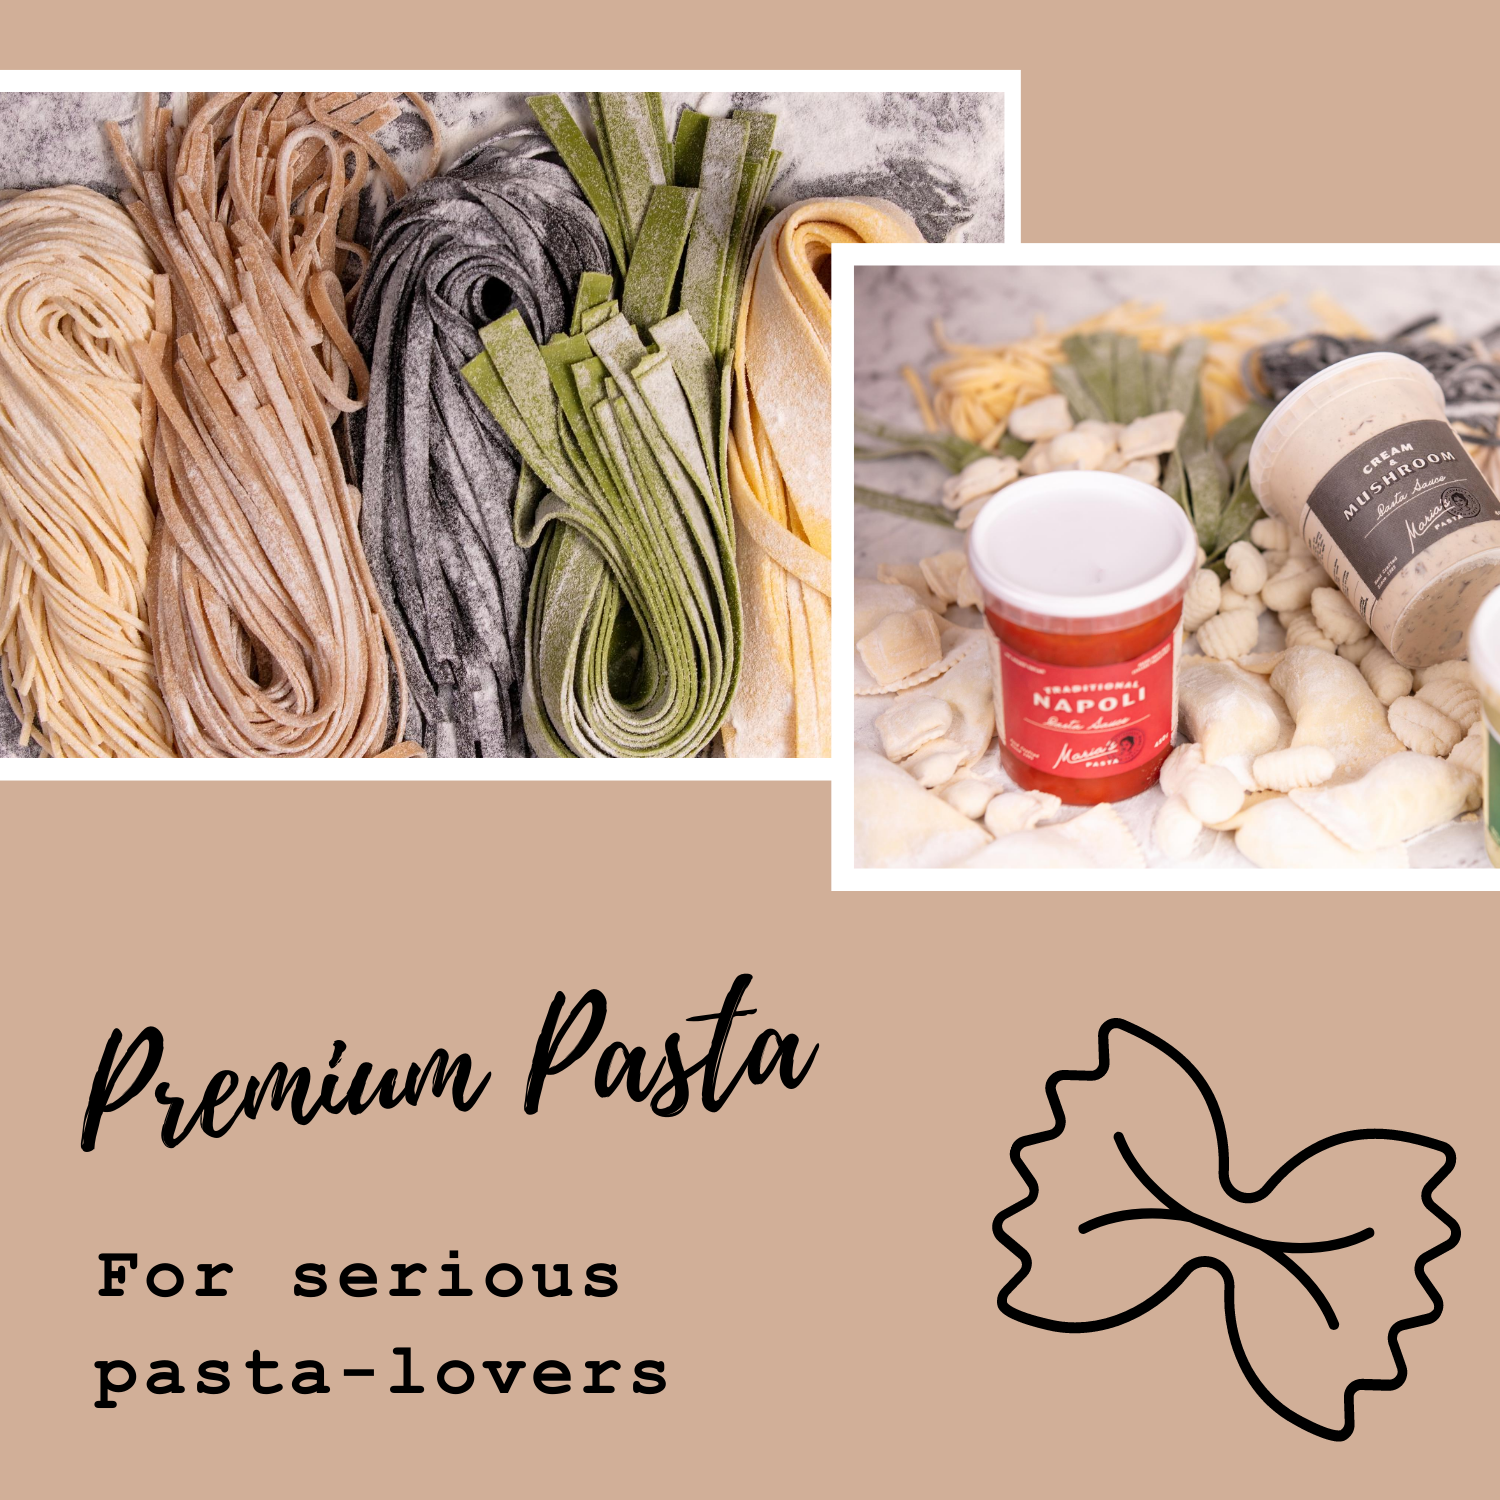 Premium Pasta collection image